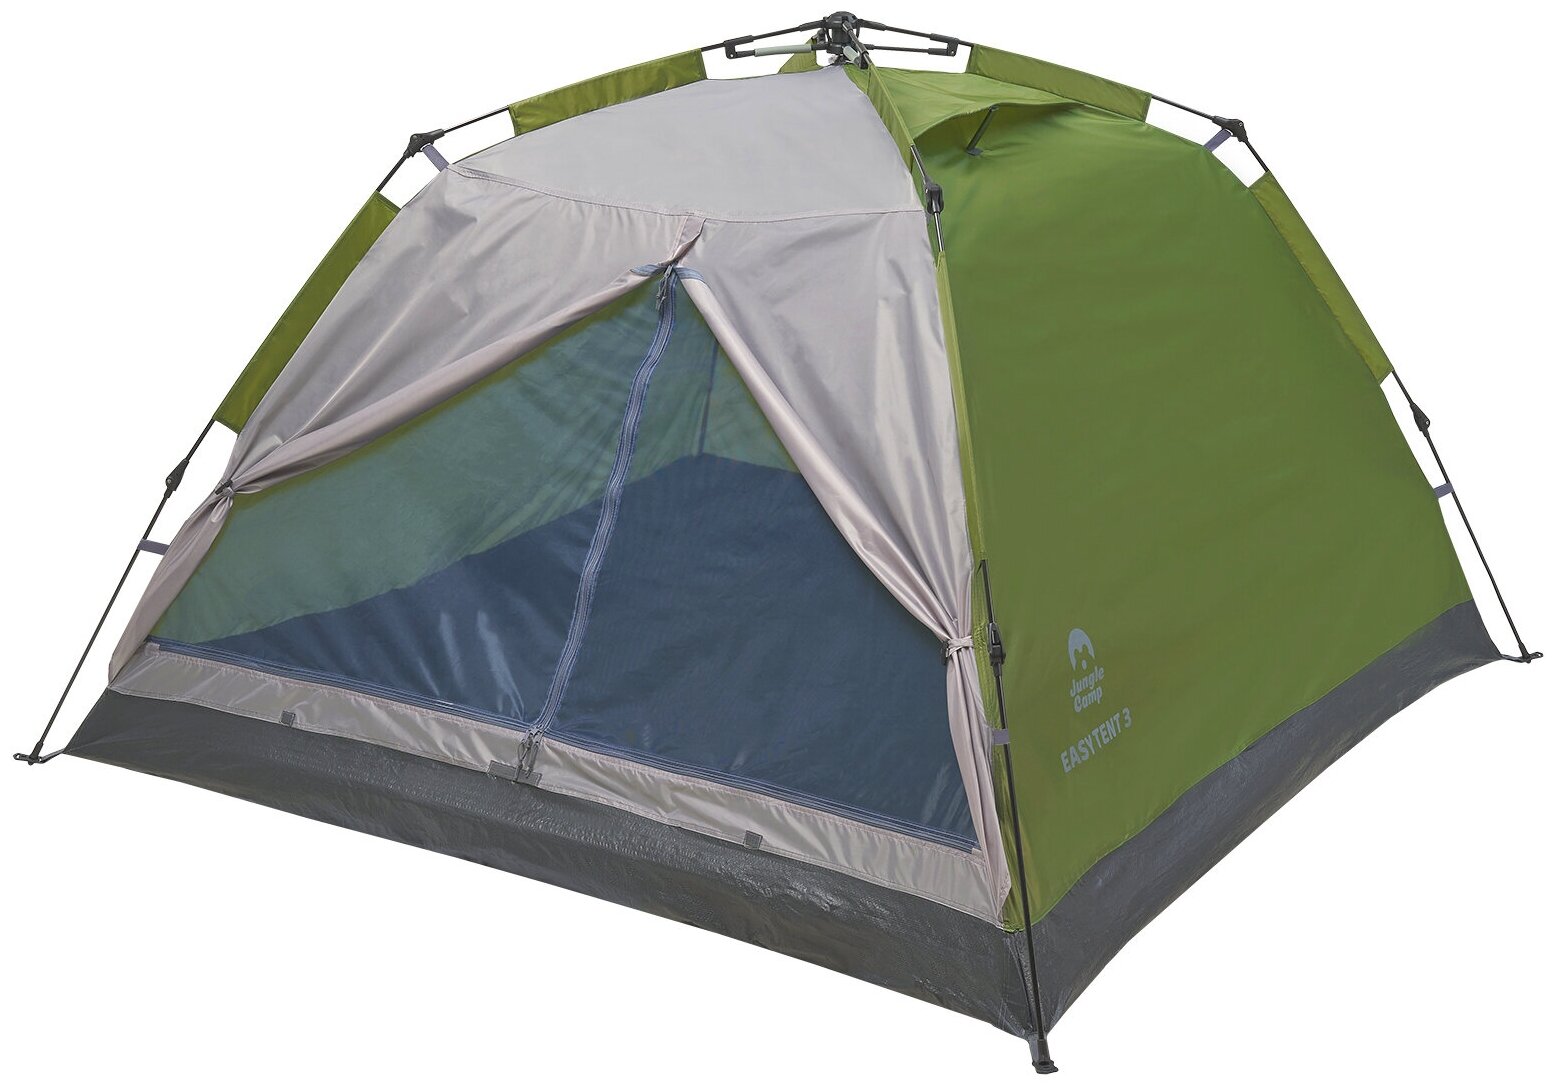 Палатка Jungle Camp Easy Tent 3